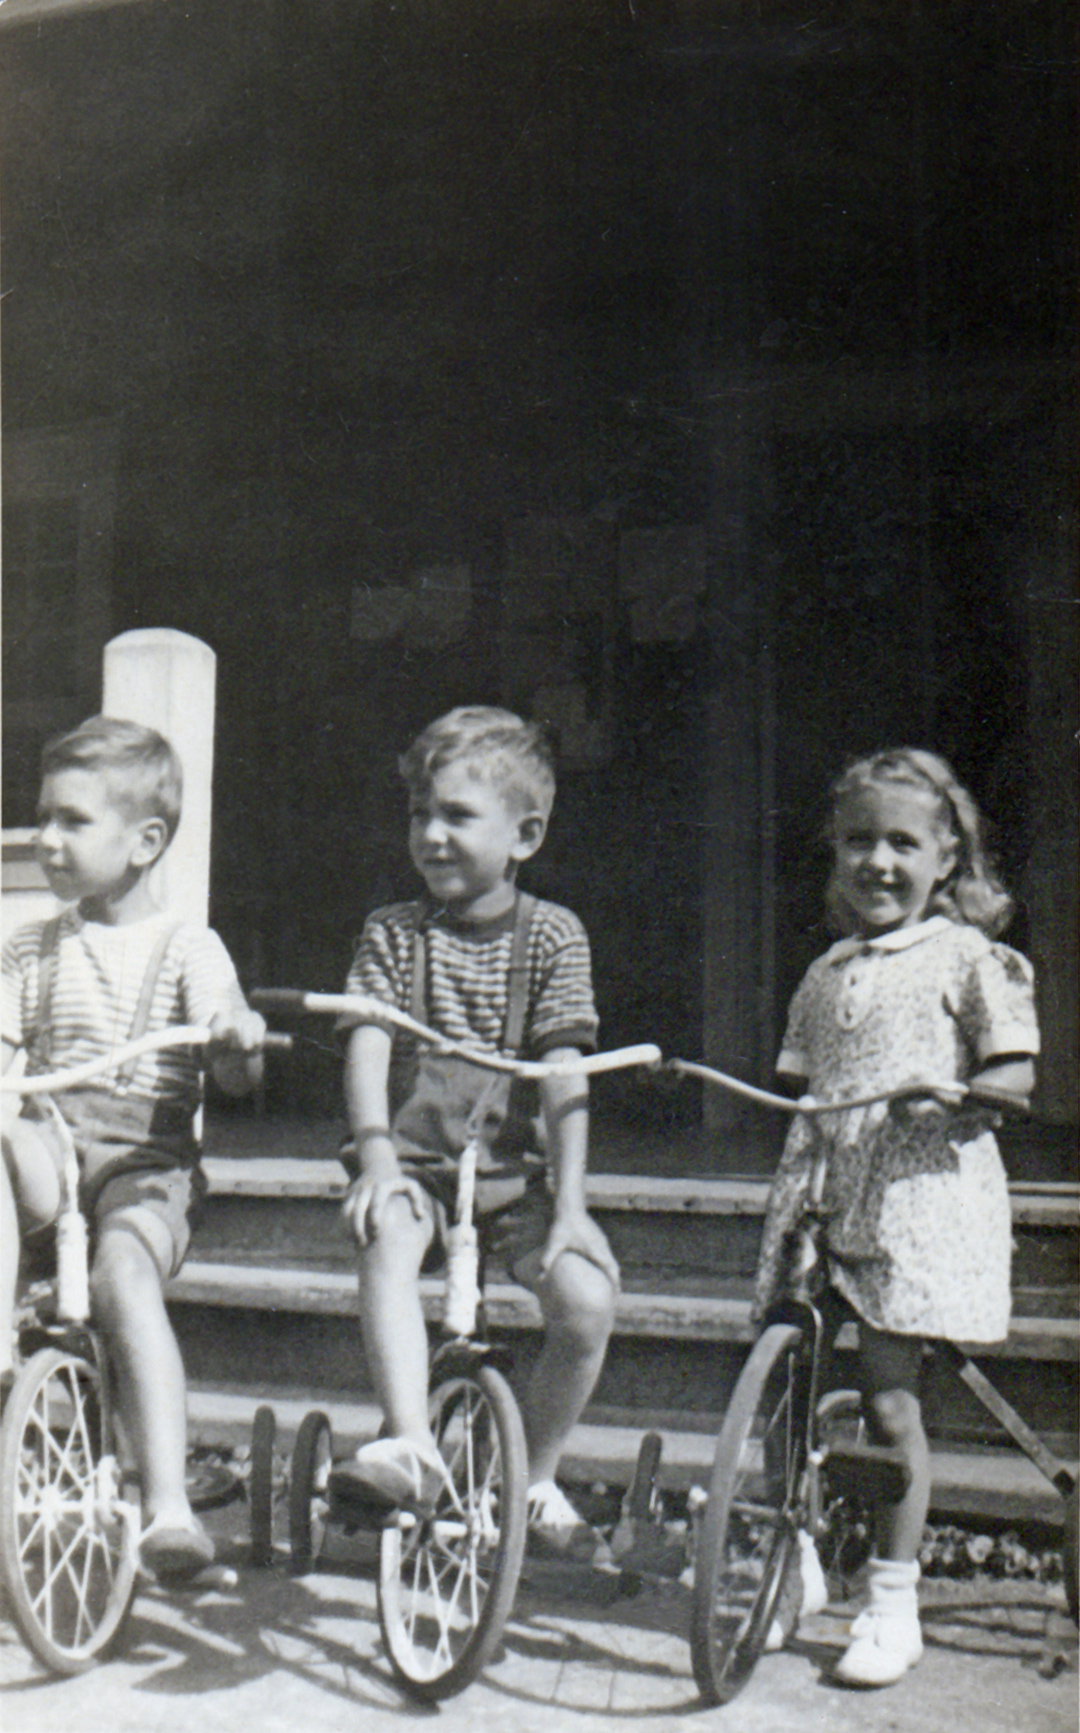 André Poirier, Marcel Poirier et Gisèle Poirier in front the Town Hall - Source: © Collection Marcel Poirier, around 1949